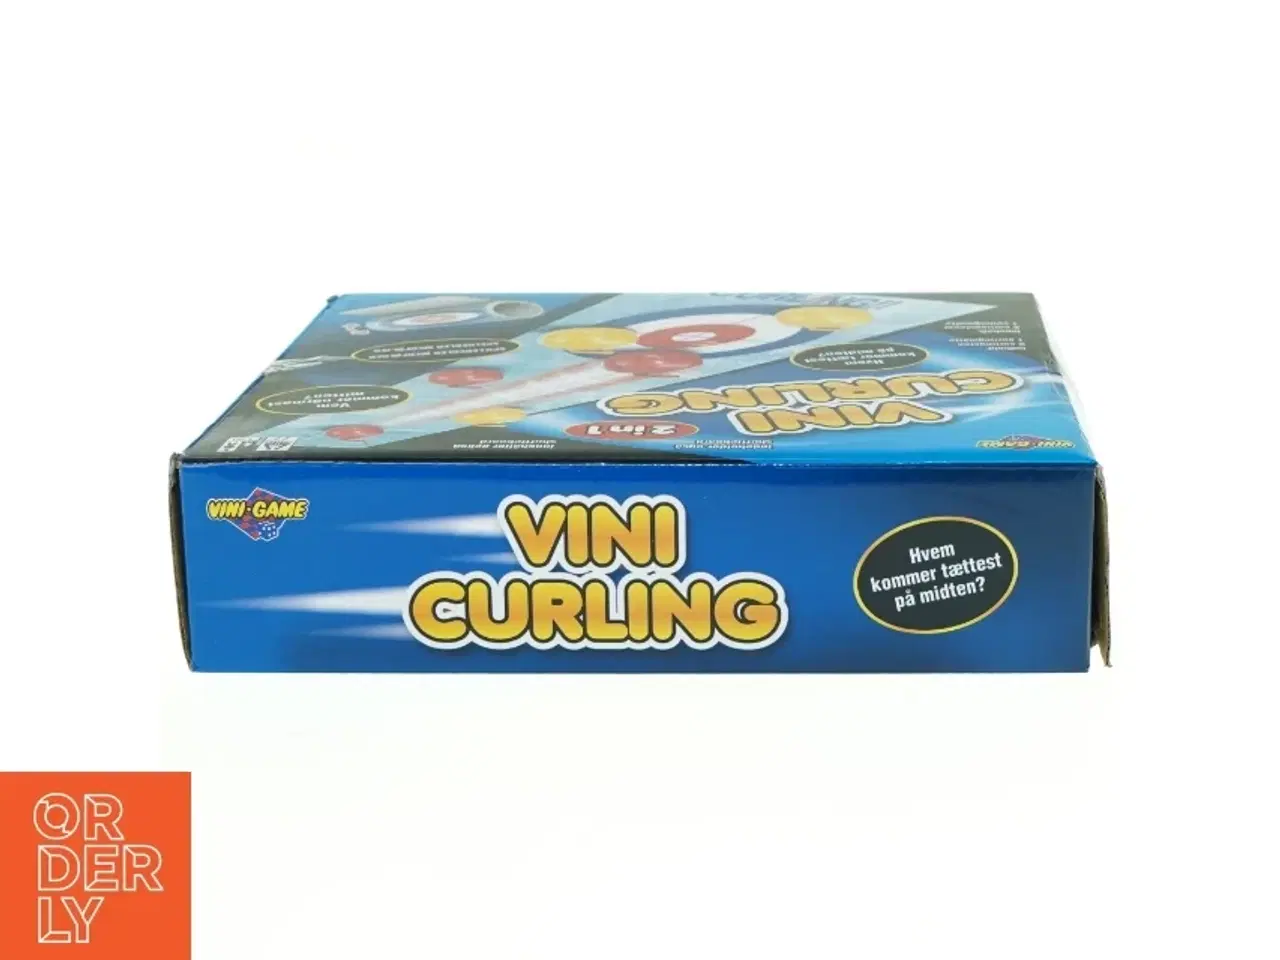 Billede 2 - Vini curling fra Vini-game (str. 25 x 20 cm)